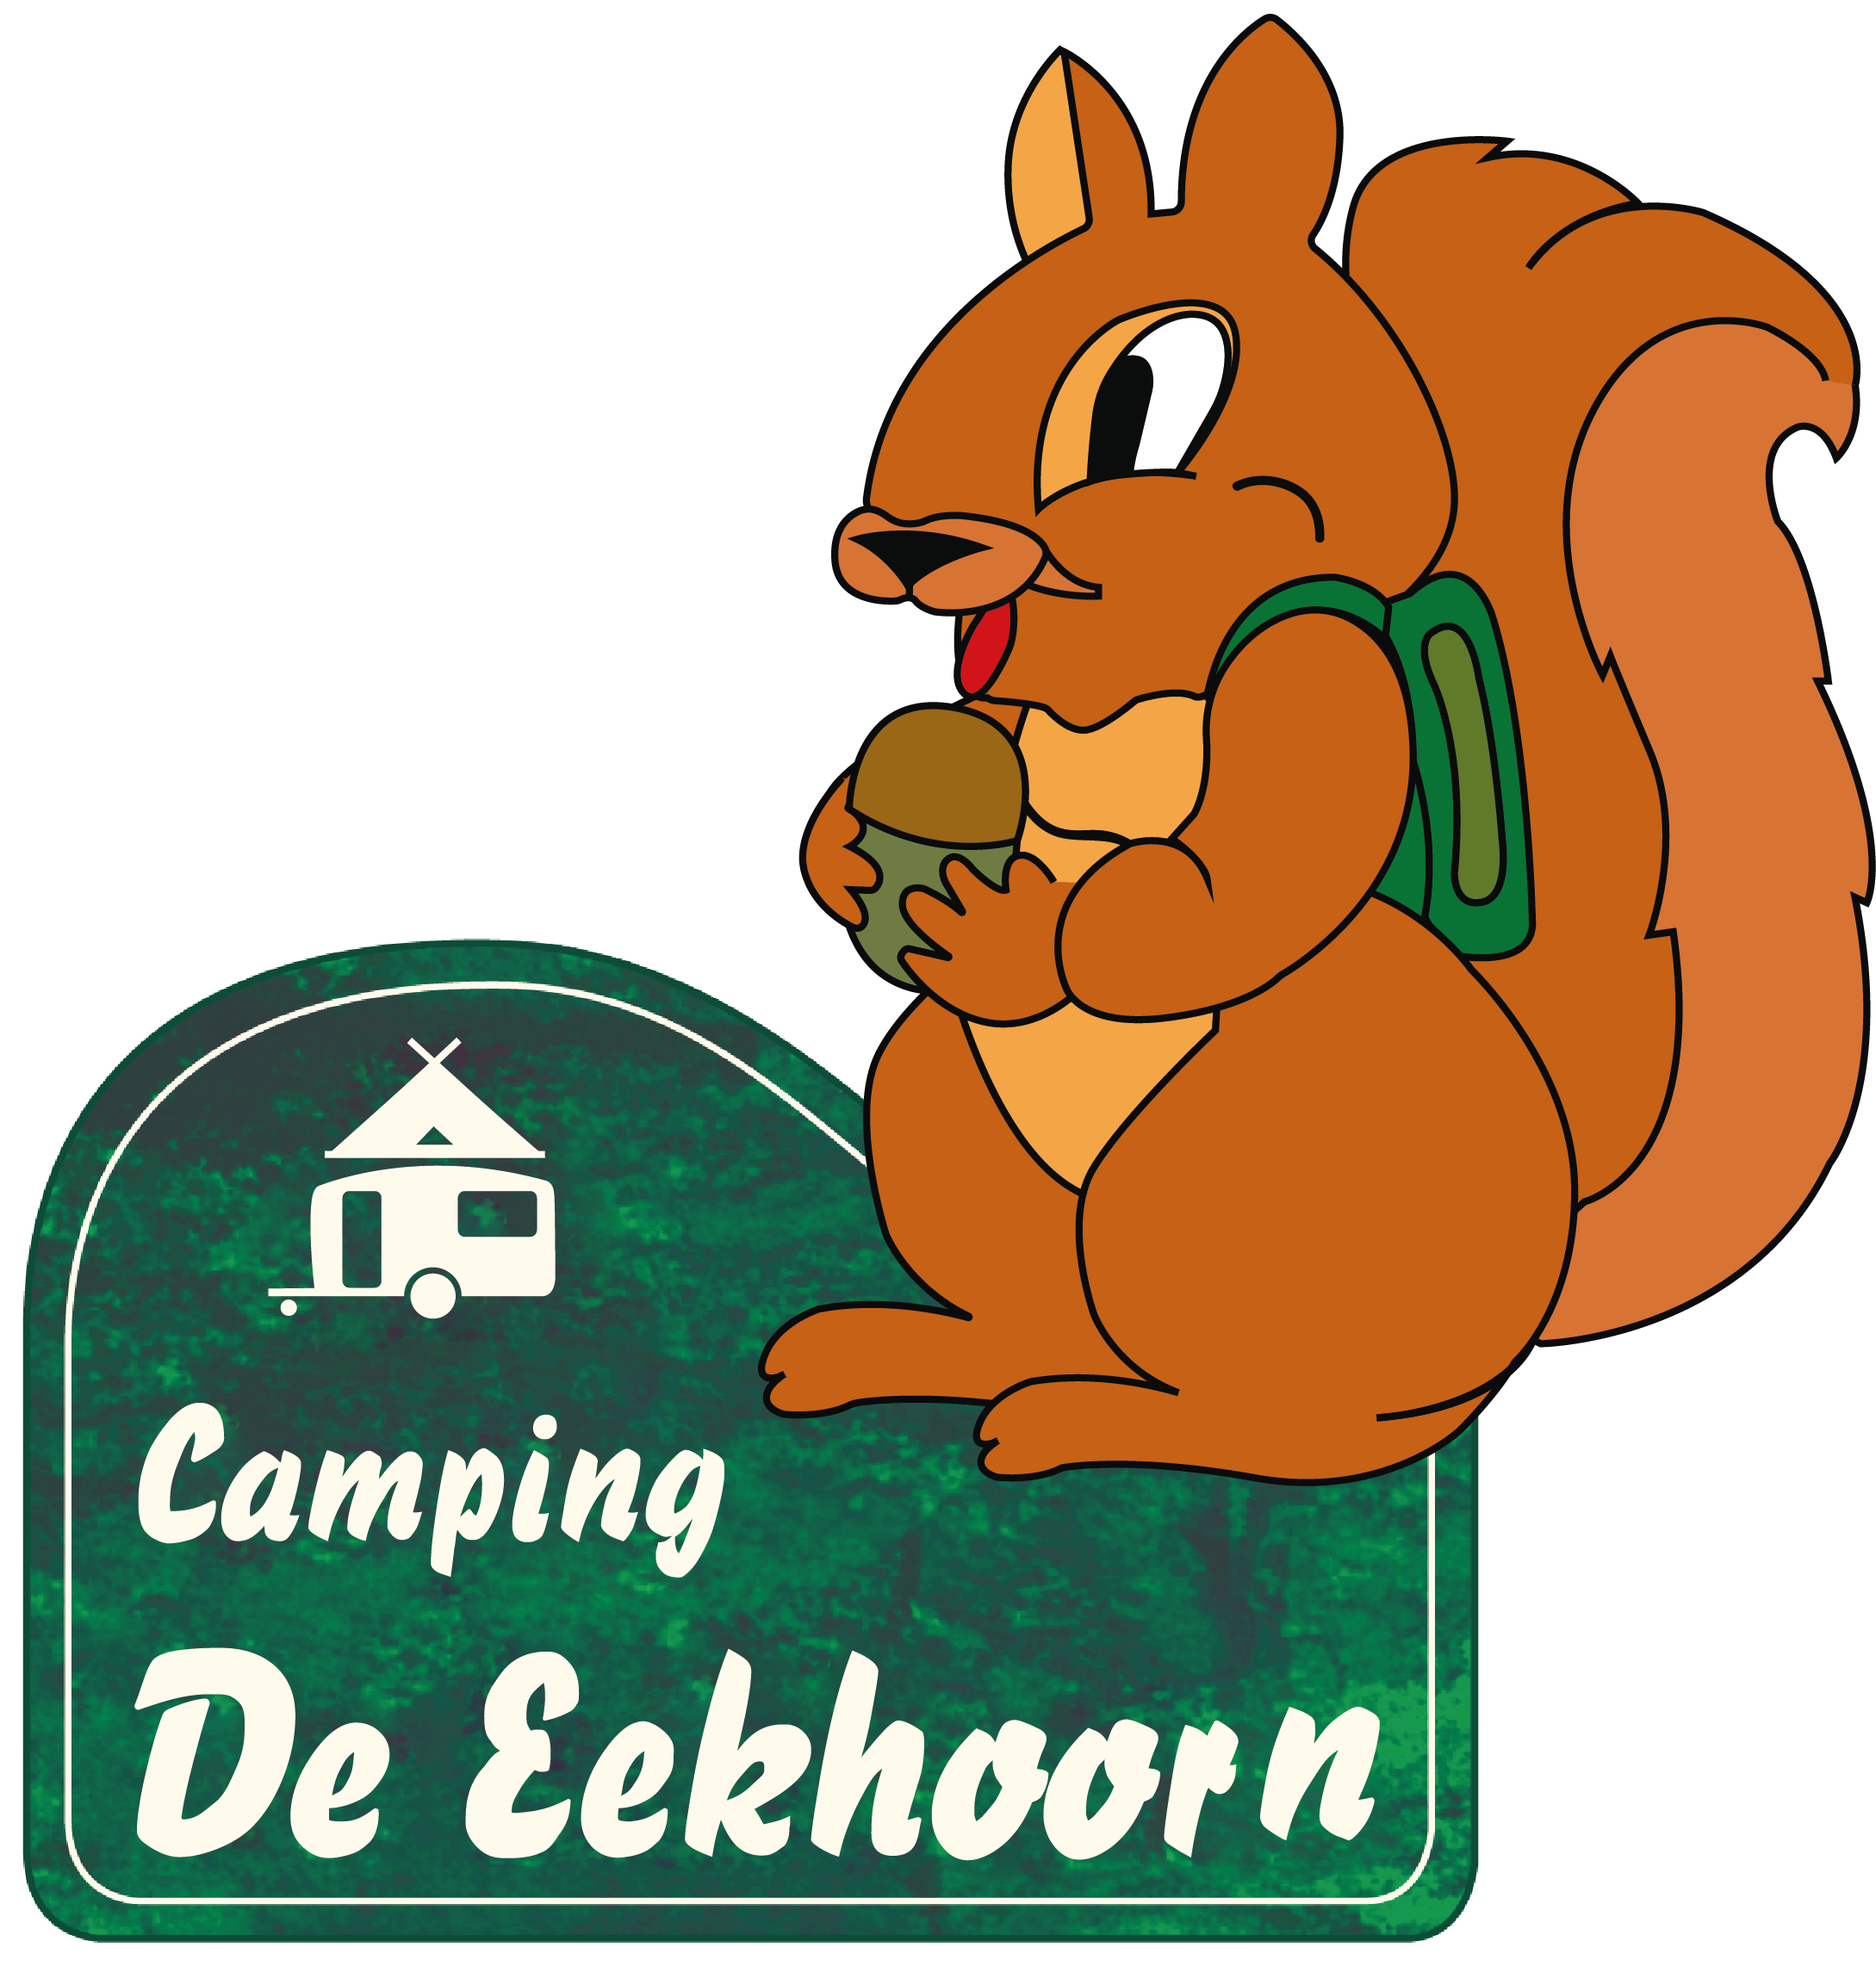 Logo Camping de Eekhoorn groot - Camping de Eekhoorn